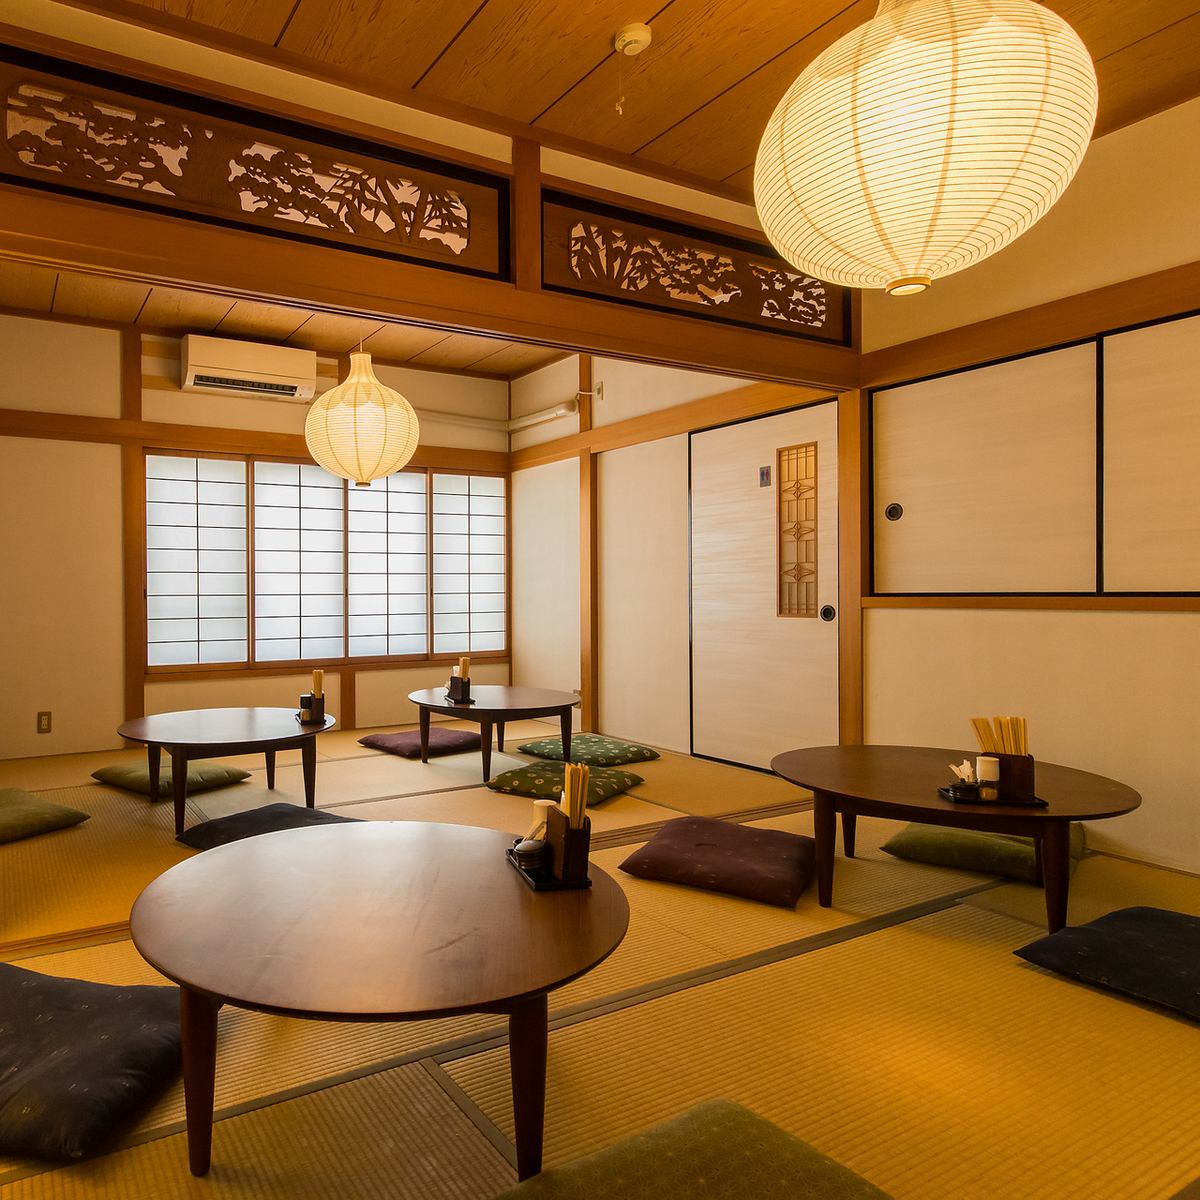 日式房间内漂浮的灯笼柔和的光线营造出非凡的氛围。